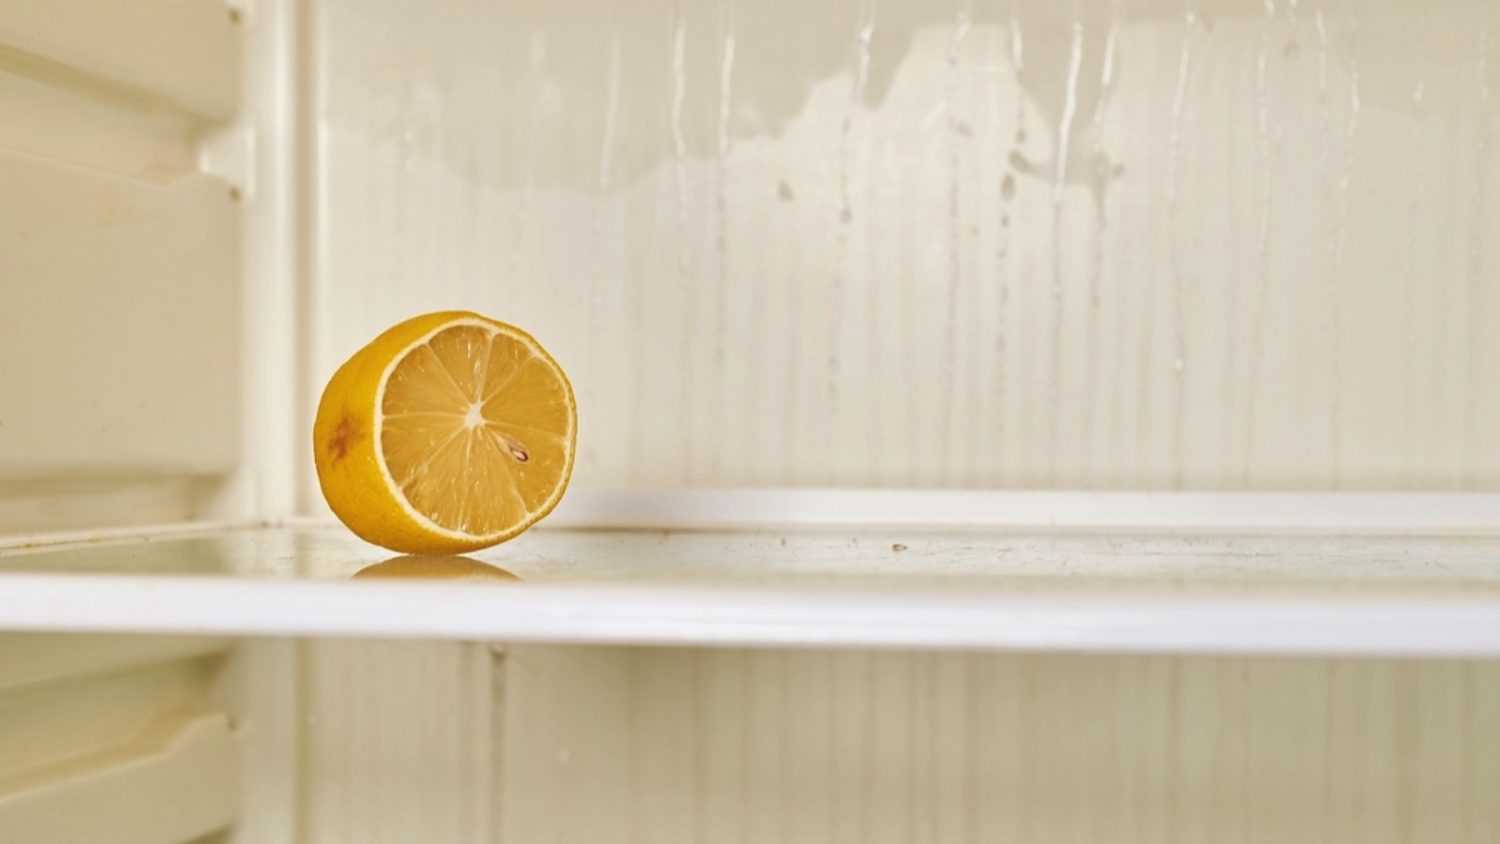 Lemon inside fridge